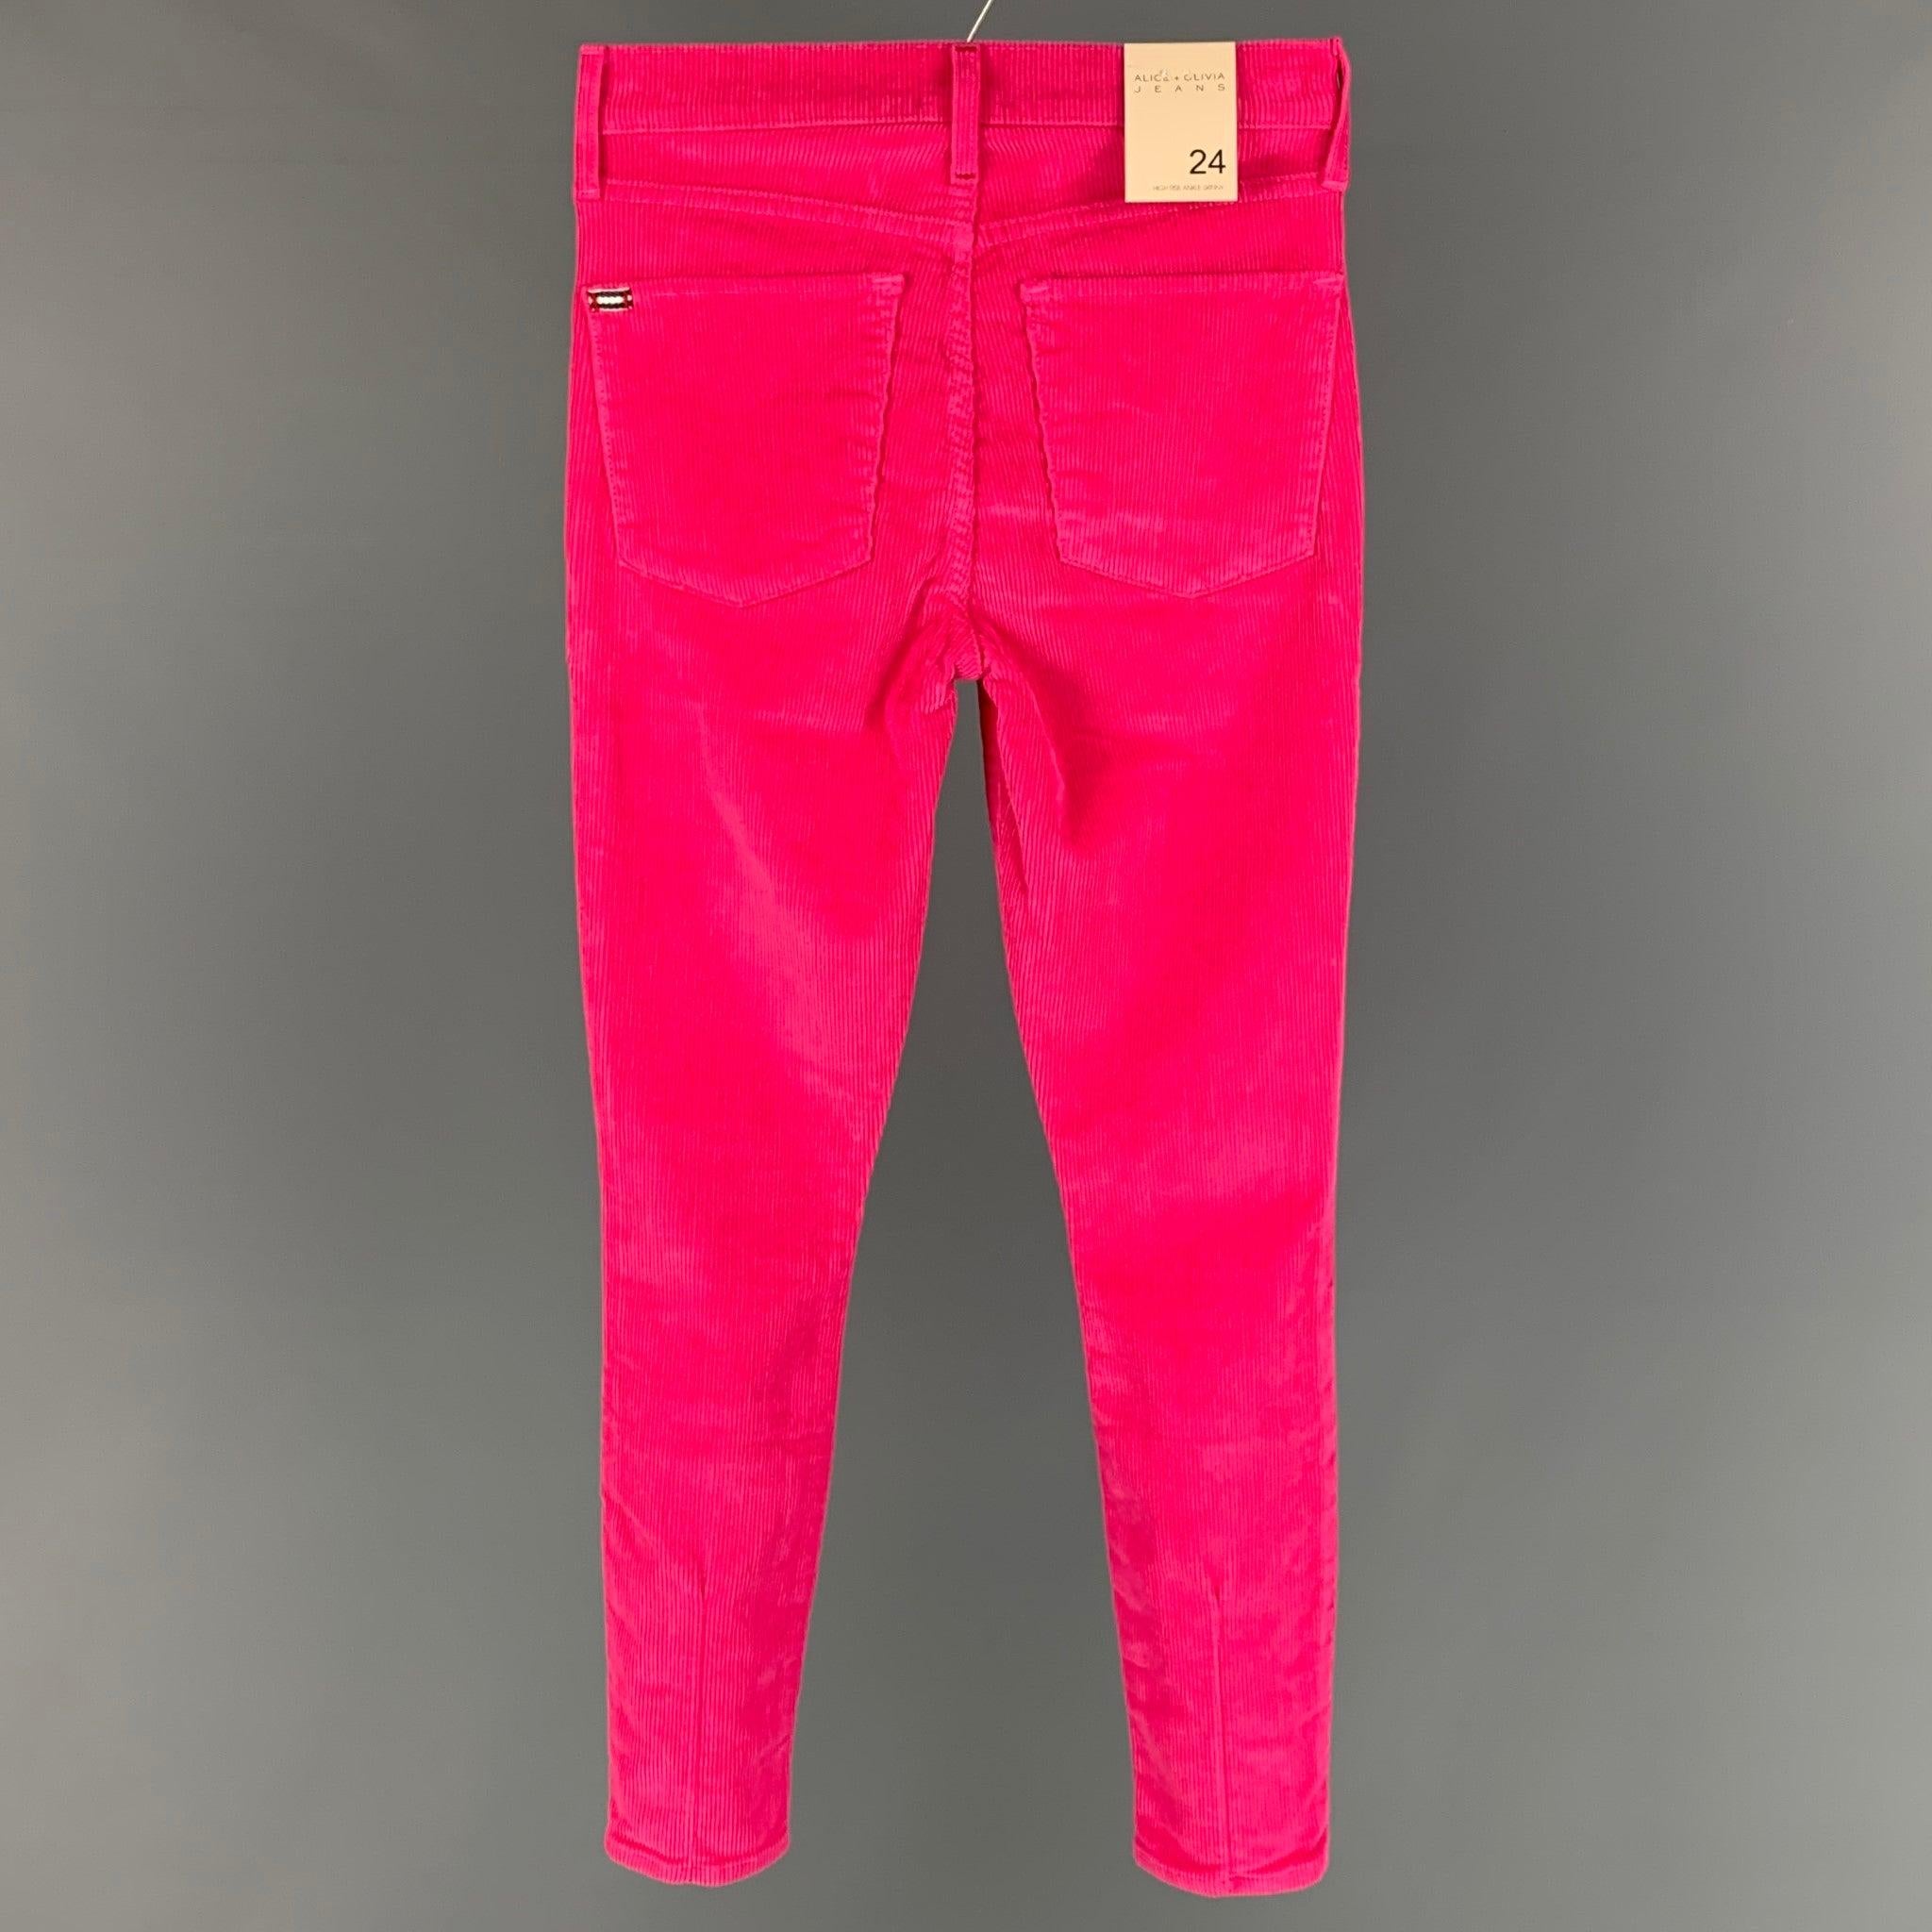 Die legere Hose von ALICE + OLIVIA ist aus rosa Baumwollcord gefertigt und hat einen Jeansschnitt, eine schmale Passform und einen Reißverschluss. Made in USA.New With Tags.  

Markiert:   24 

Abmessungen: 
  Taille: 24 Zoll 
 Steigung: 10 Zoll 